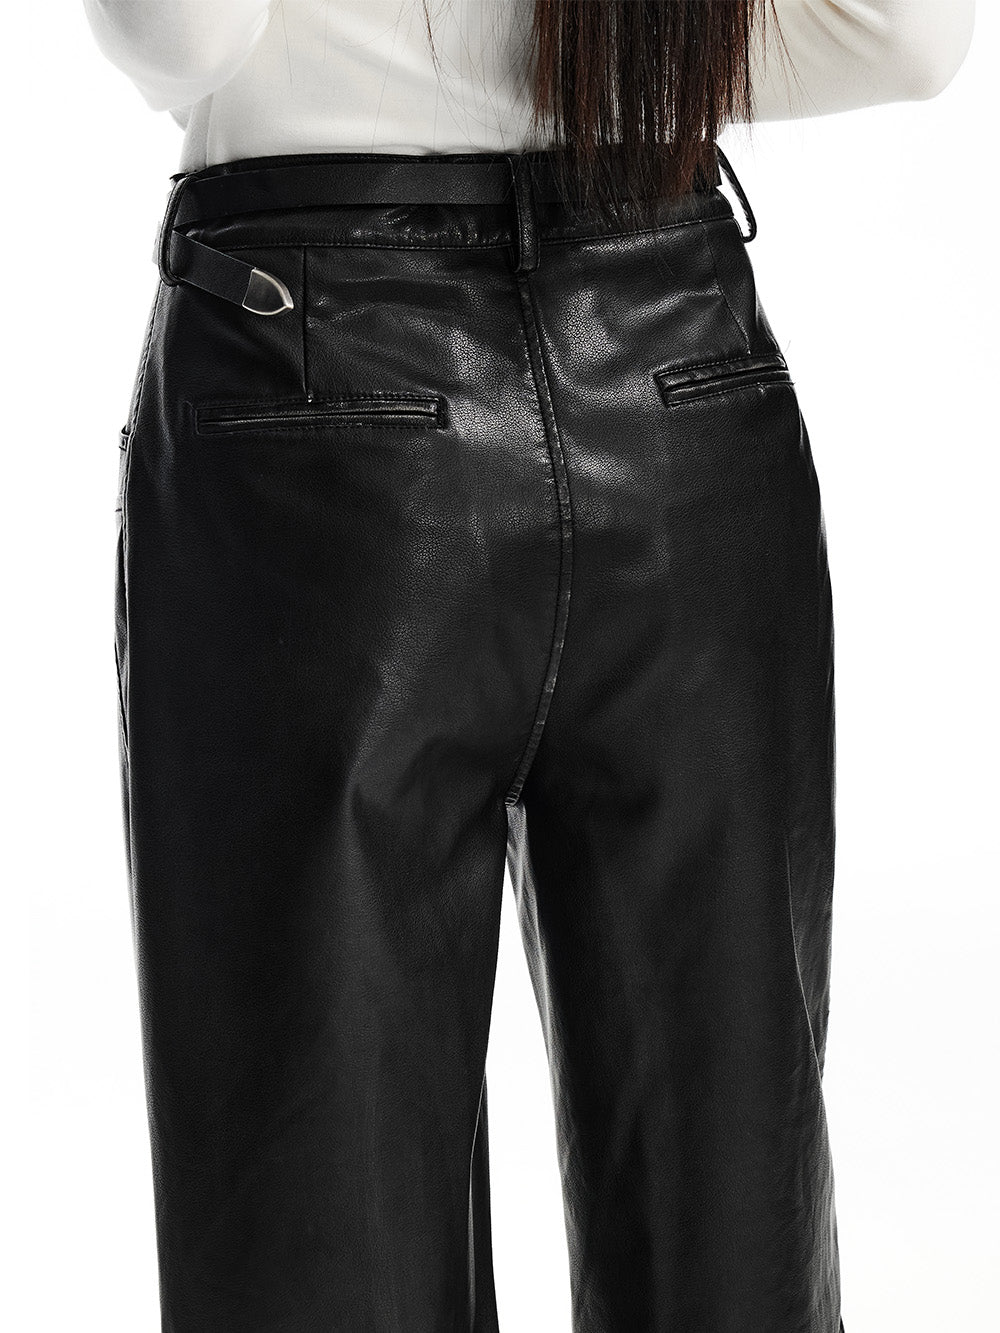 MUKTANK x WESAME LAB Versatile Black Washed Leather Pants